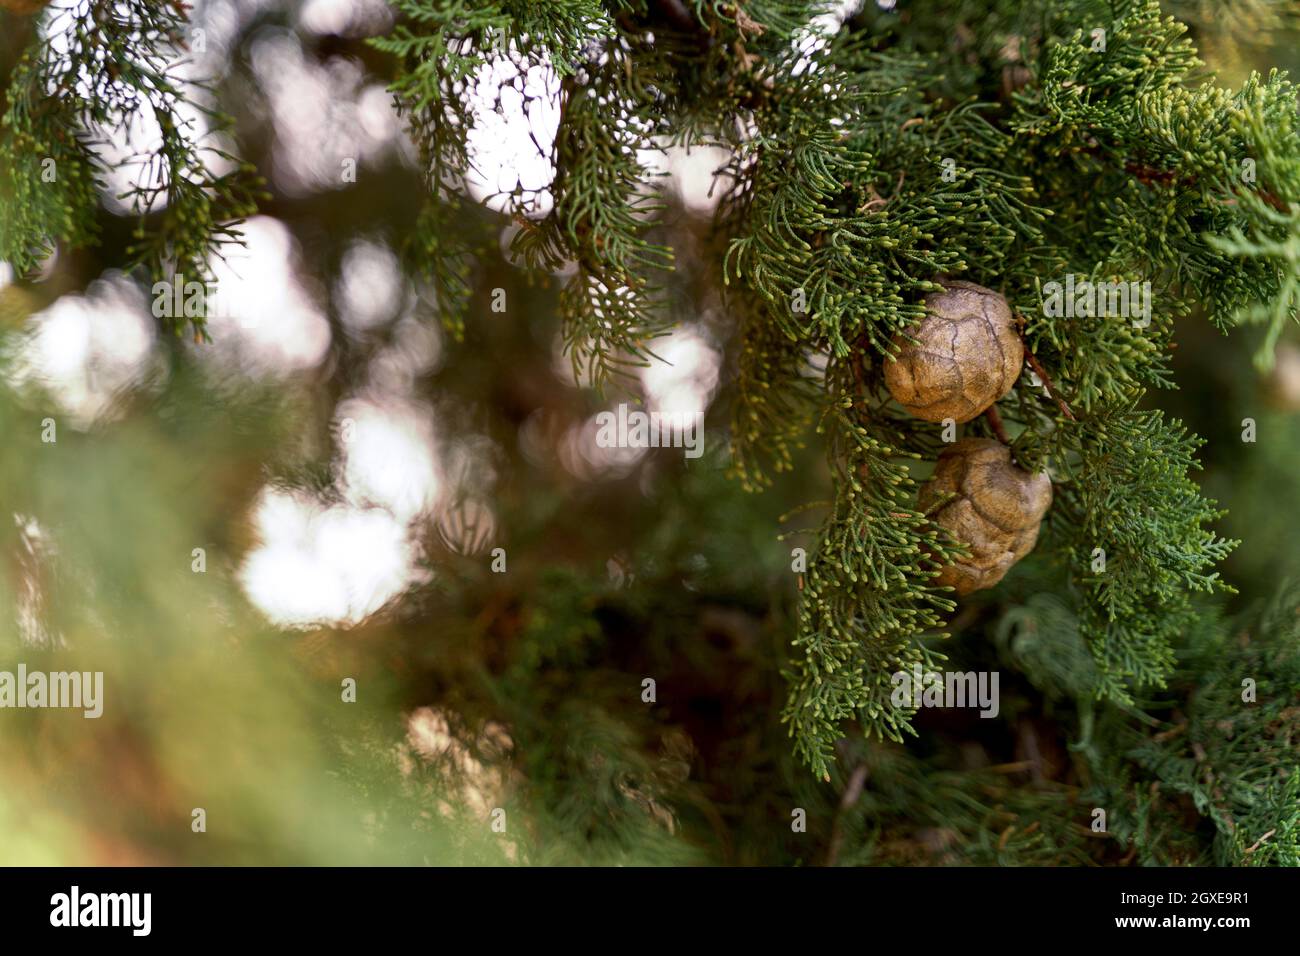 Branche de cyprès méditerranéen avec des cônes ronds bruns.Gros plan Banque D'Images